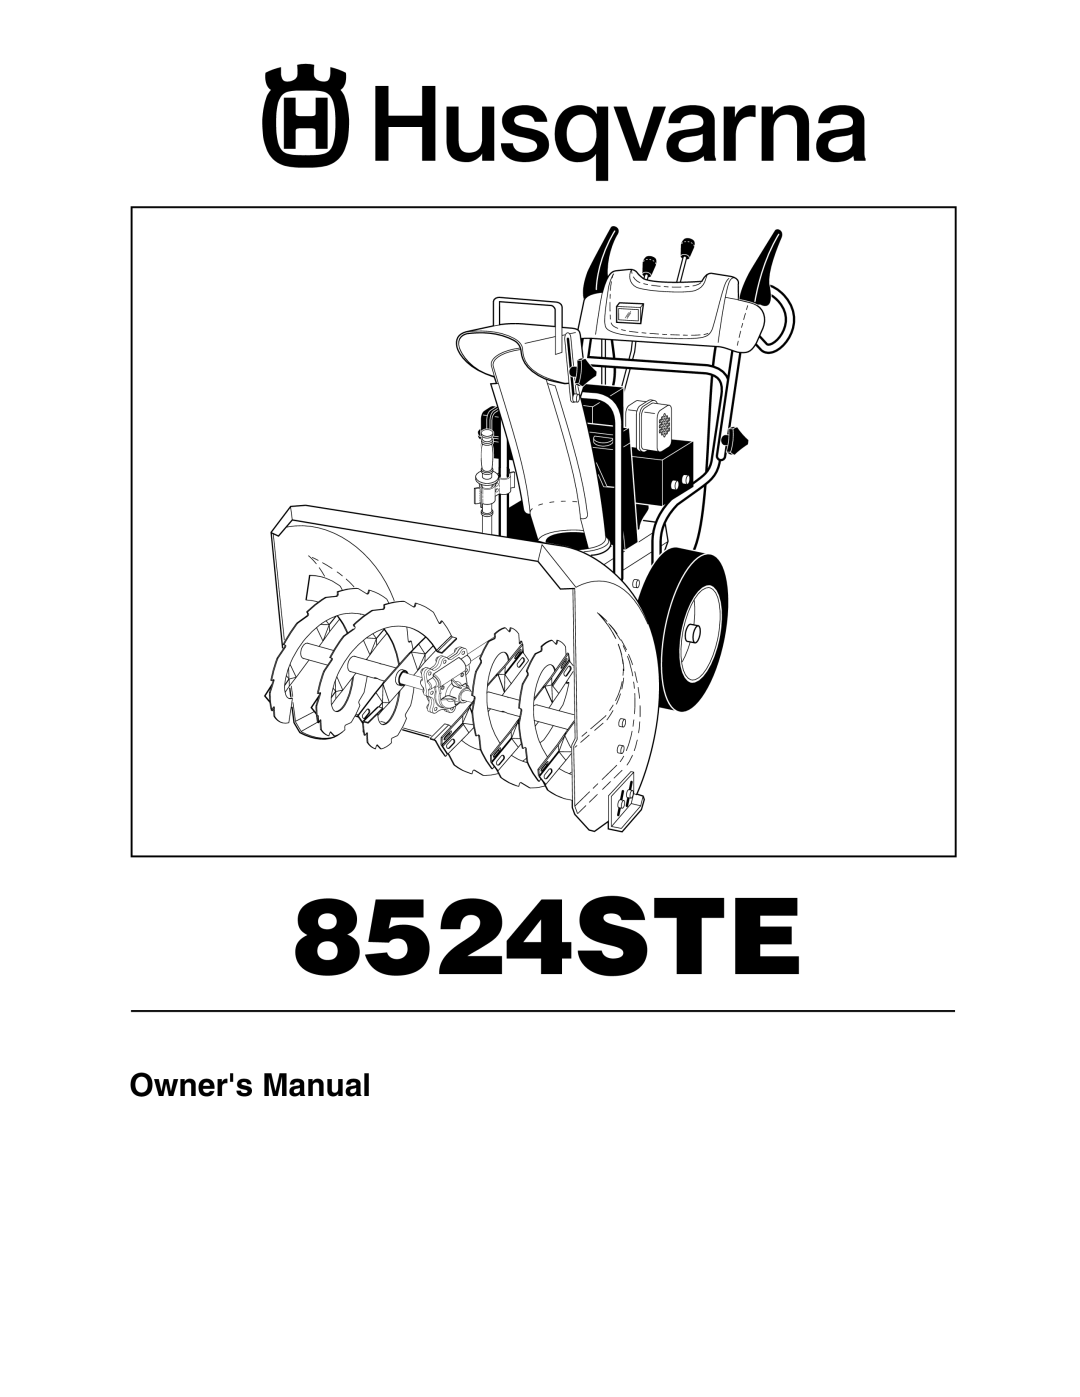 Husqvarna 8524STE owner manual 